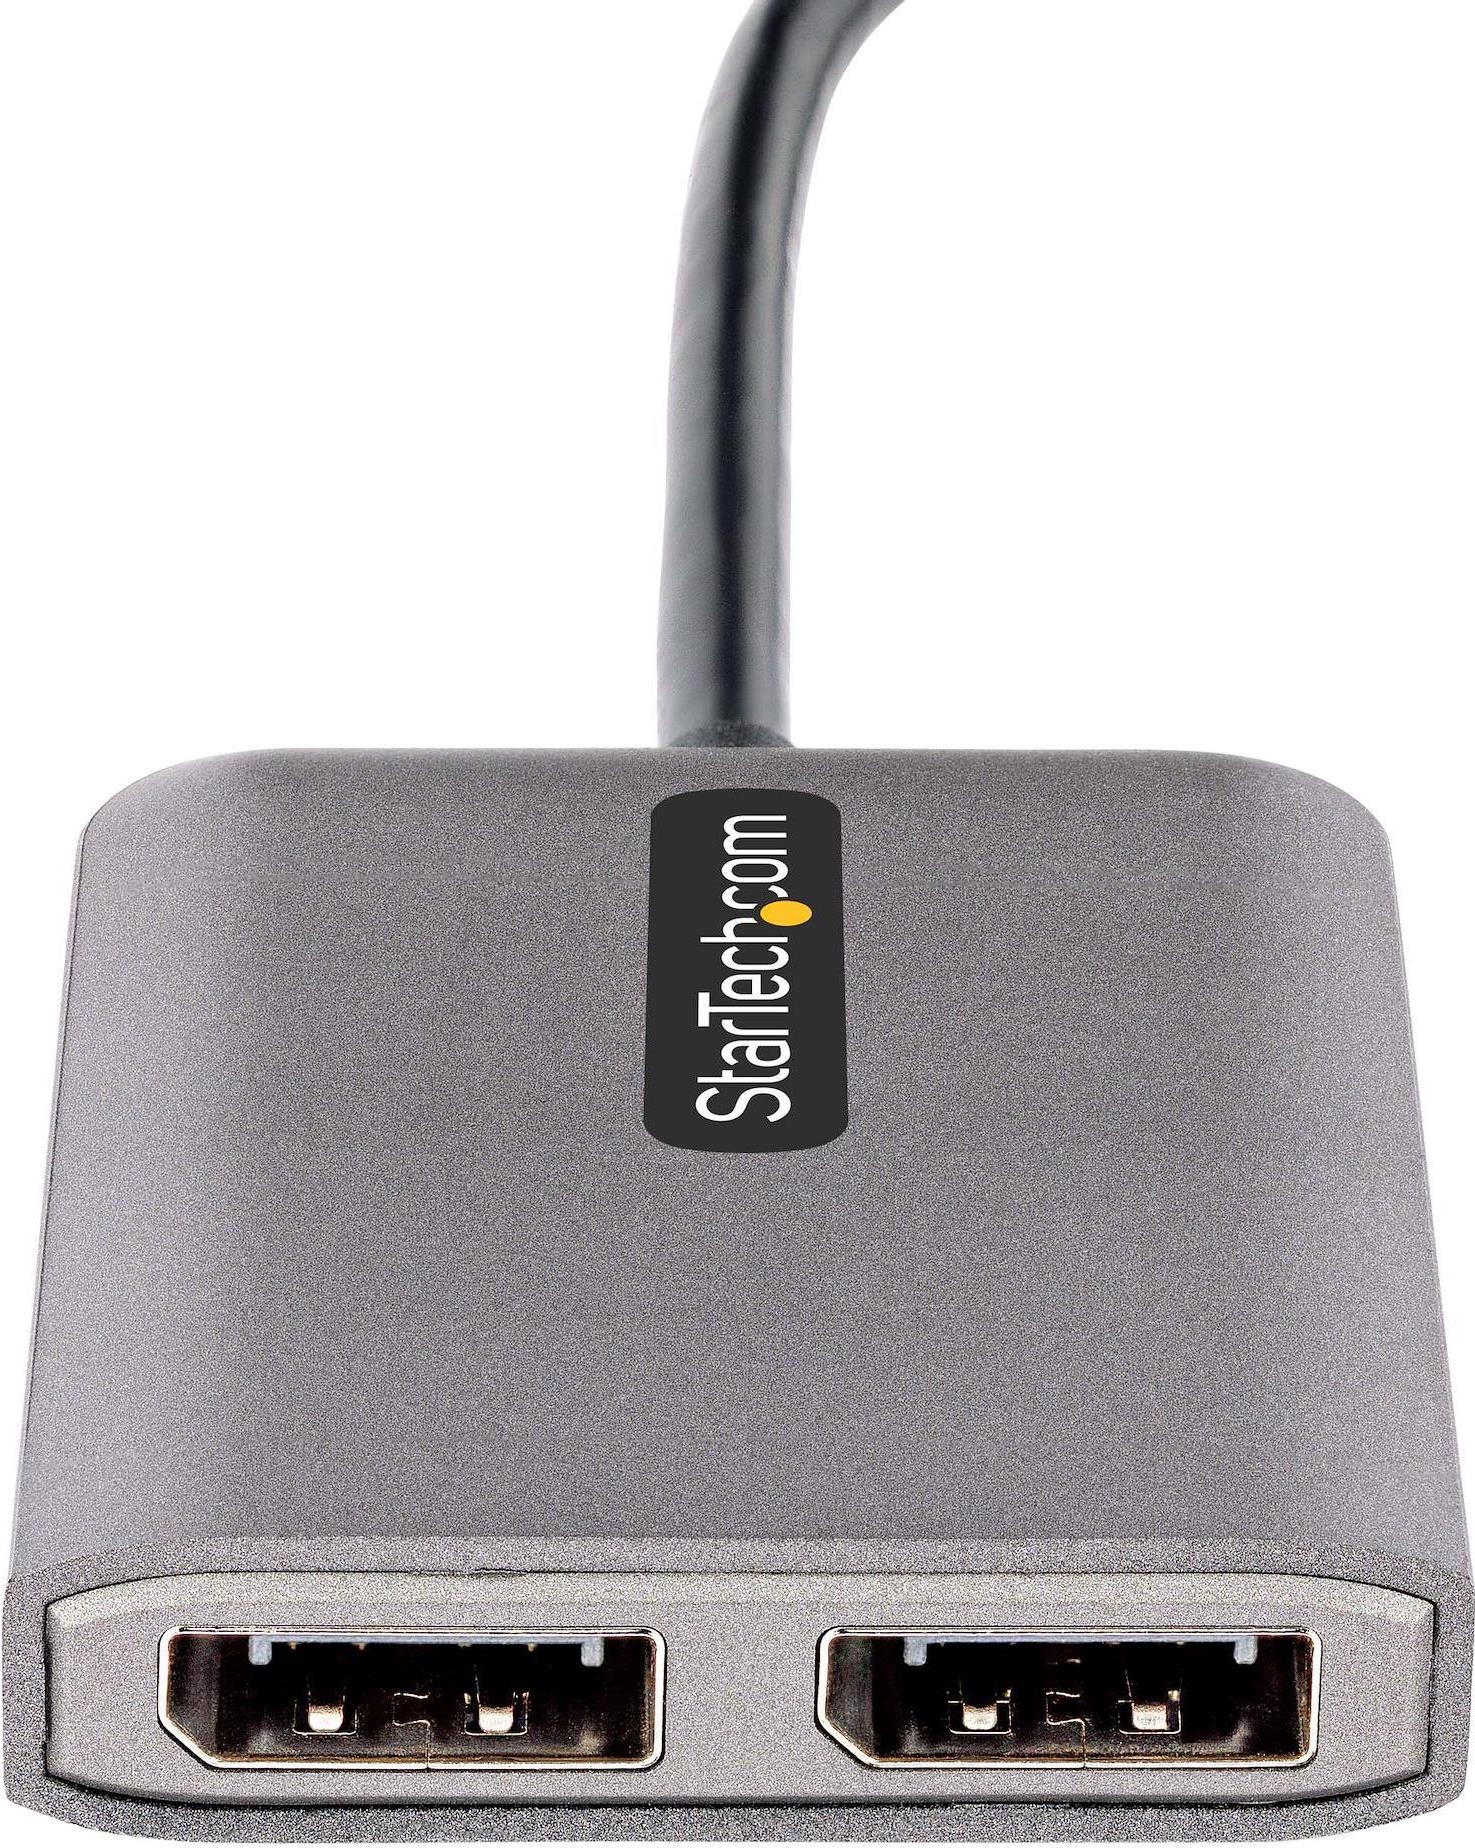 STARTECH.COM 2-Port USB-C MST Hub - USB-C auf DisplayPort Adapter/Splitter - USB-C Adapter/Hub Dual